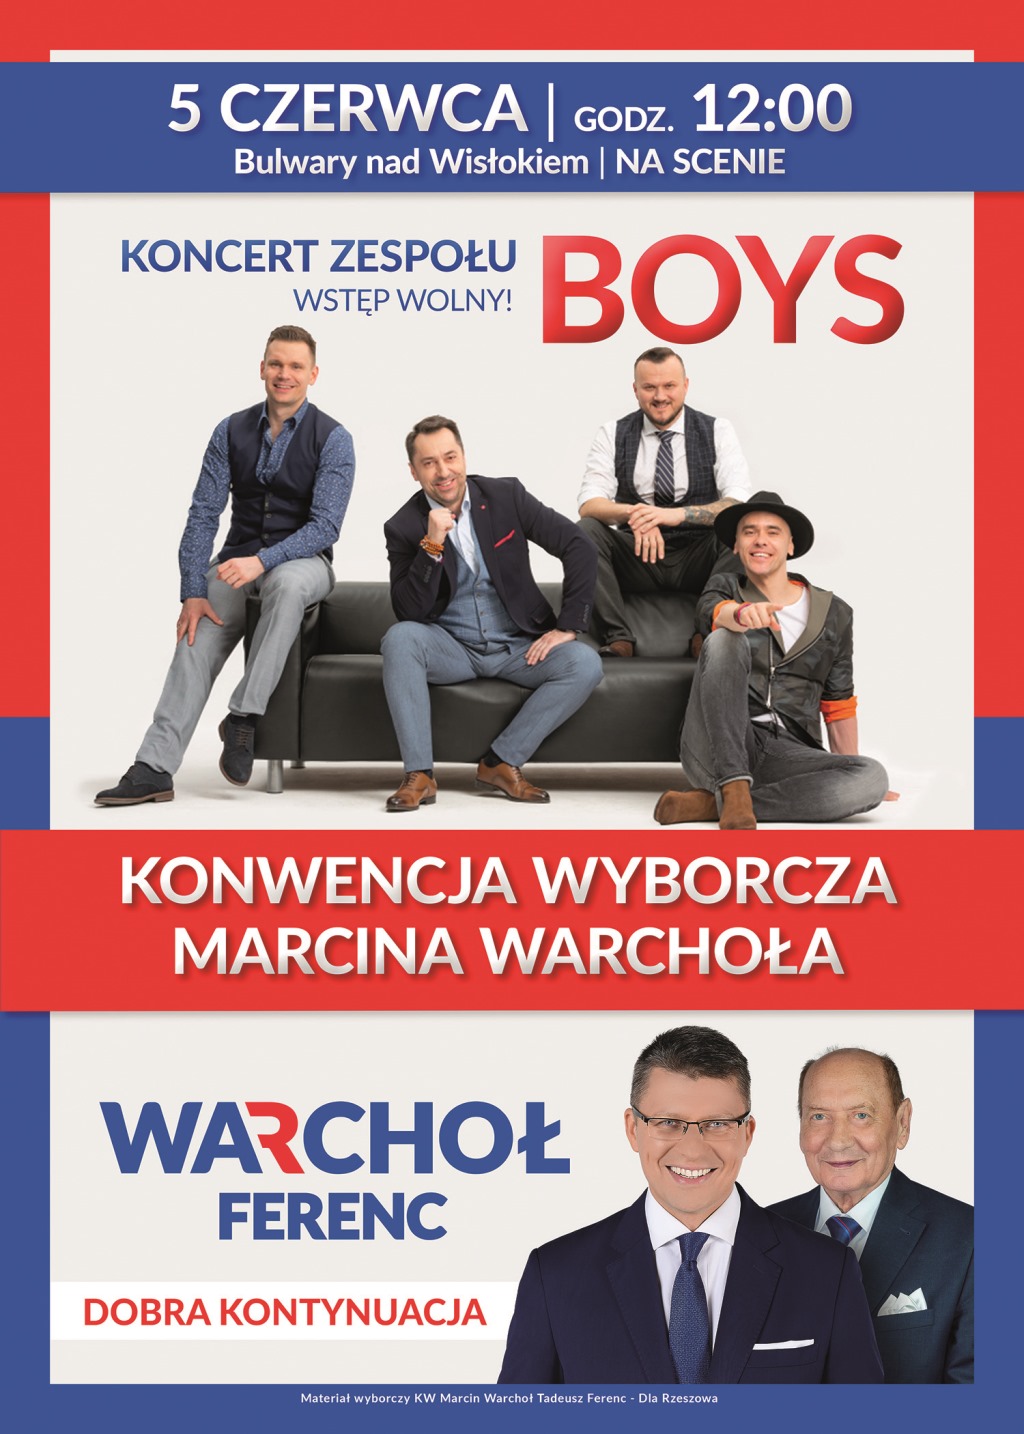 Konwencja Wyborcza Marcina Warchoła oraz koncert BOYS